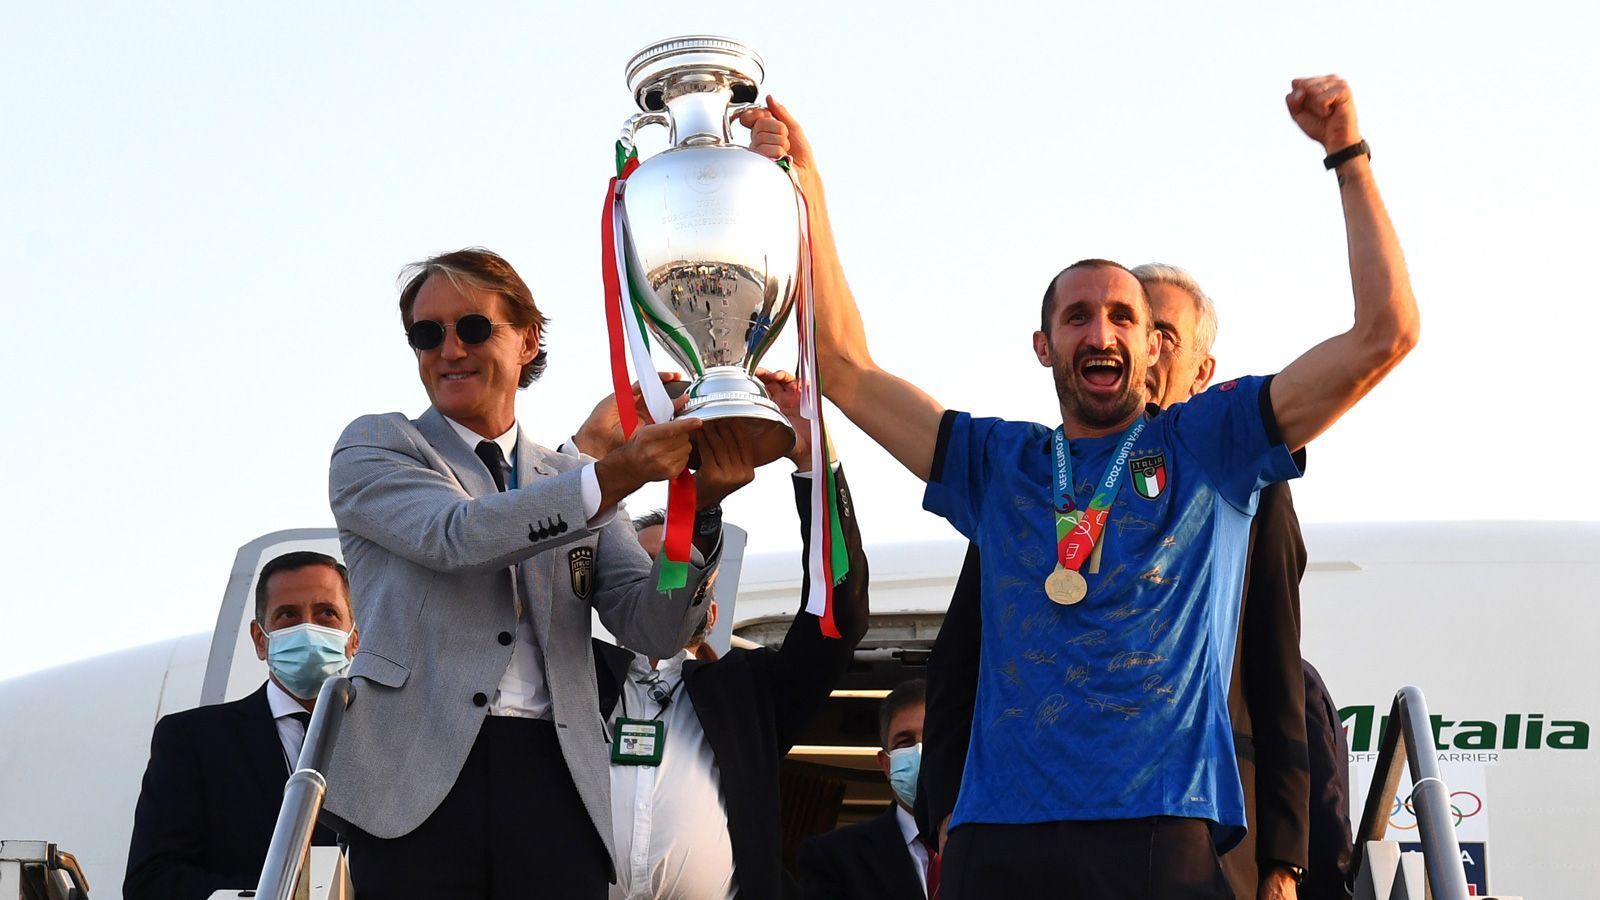 
                <strong>Chiellini zeigt den Pokal</strong><br>
                Trainer Roberto Mancini (l.) und Kapitän Roberto Chiellini tragen den Pokal aus dem Flugzeug. Die Laune ist ganz offensichtlich großartig.
              